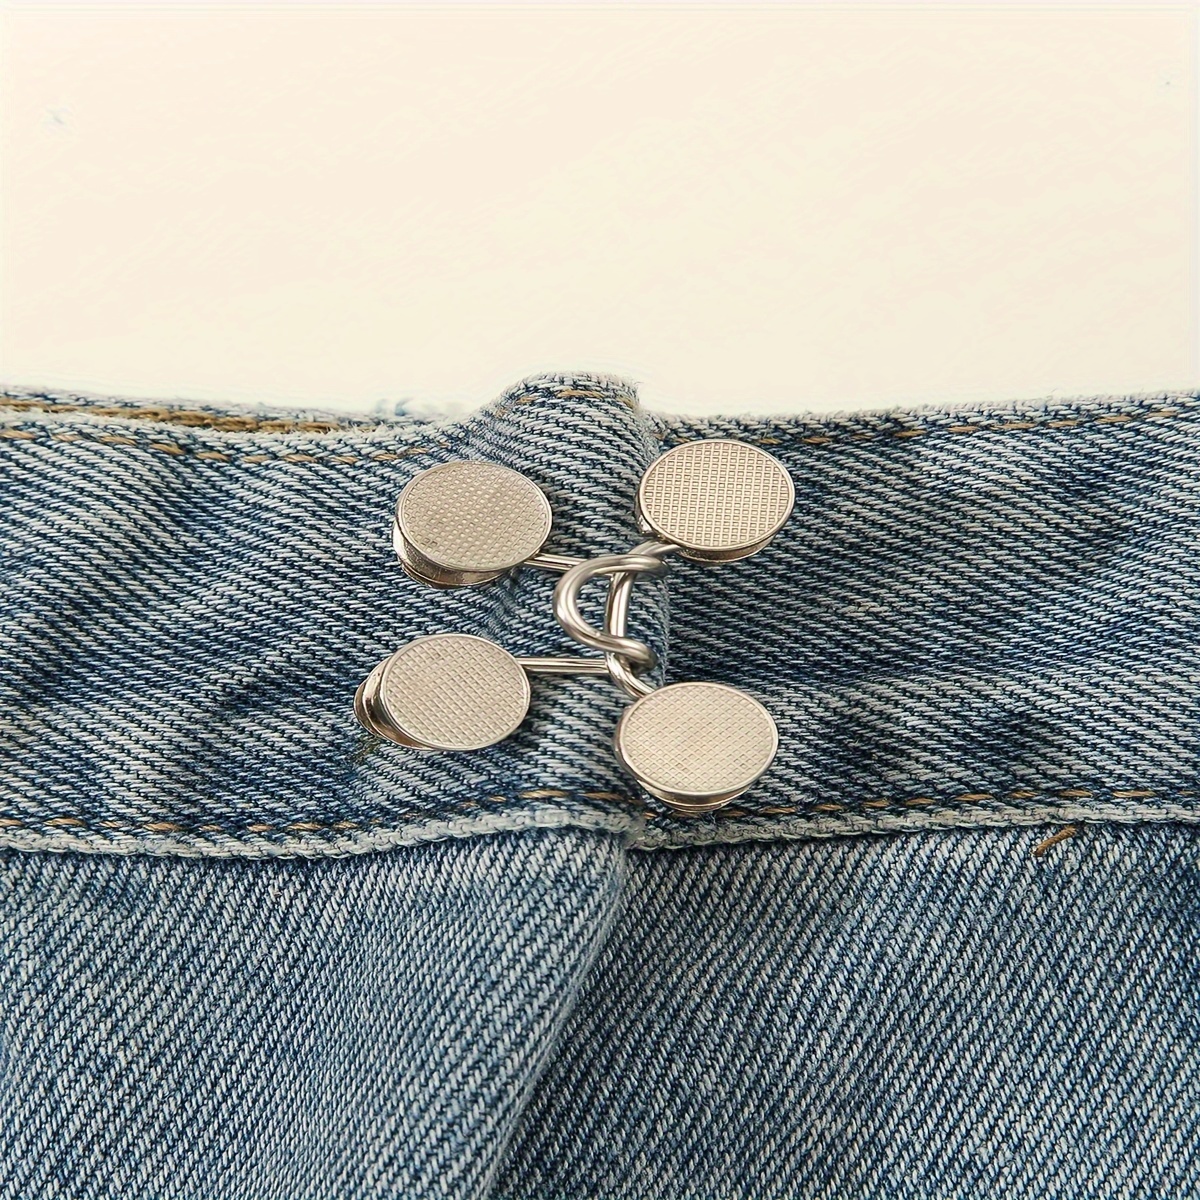 Bouton Bear Jeans, épingle à bouton Jean réglable, boucles de taille  décoratives détachables, pas de couture, bouton de réglage de la taille  Tighten Fit parfait pour pantalon